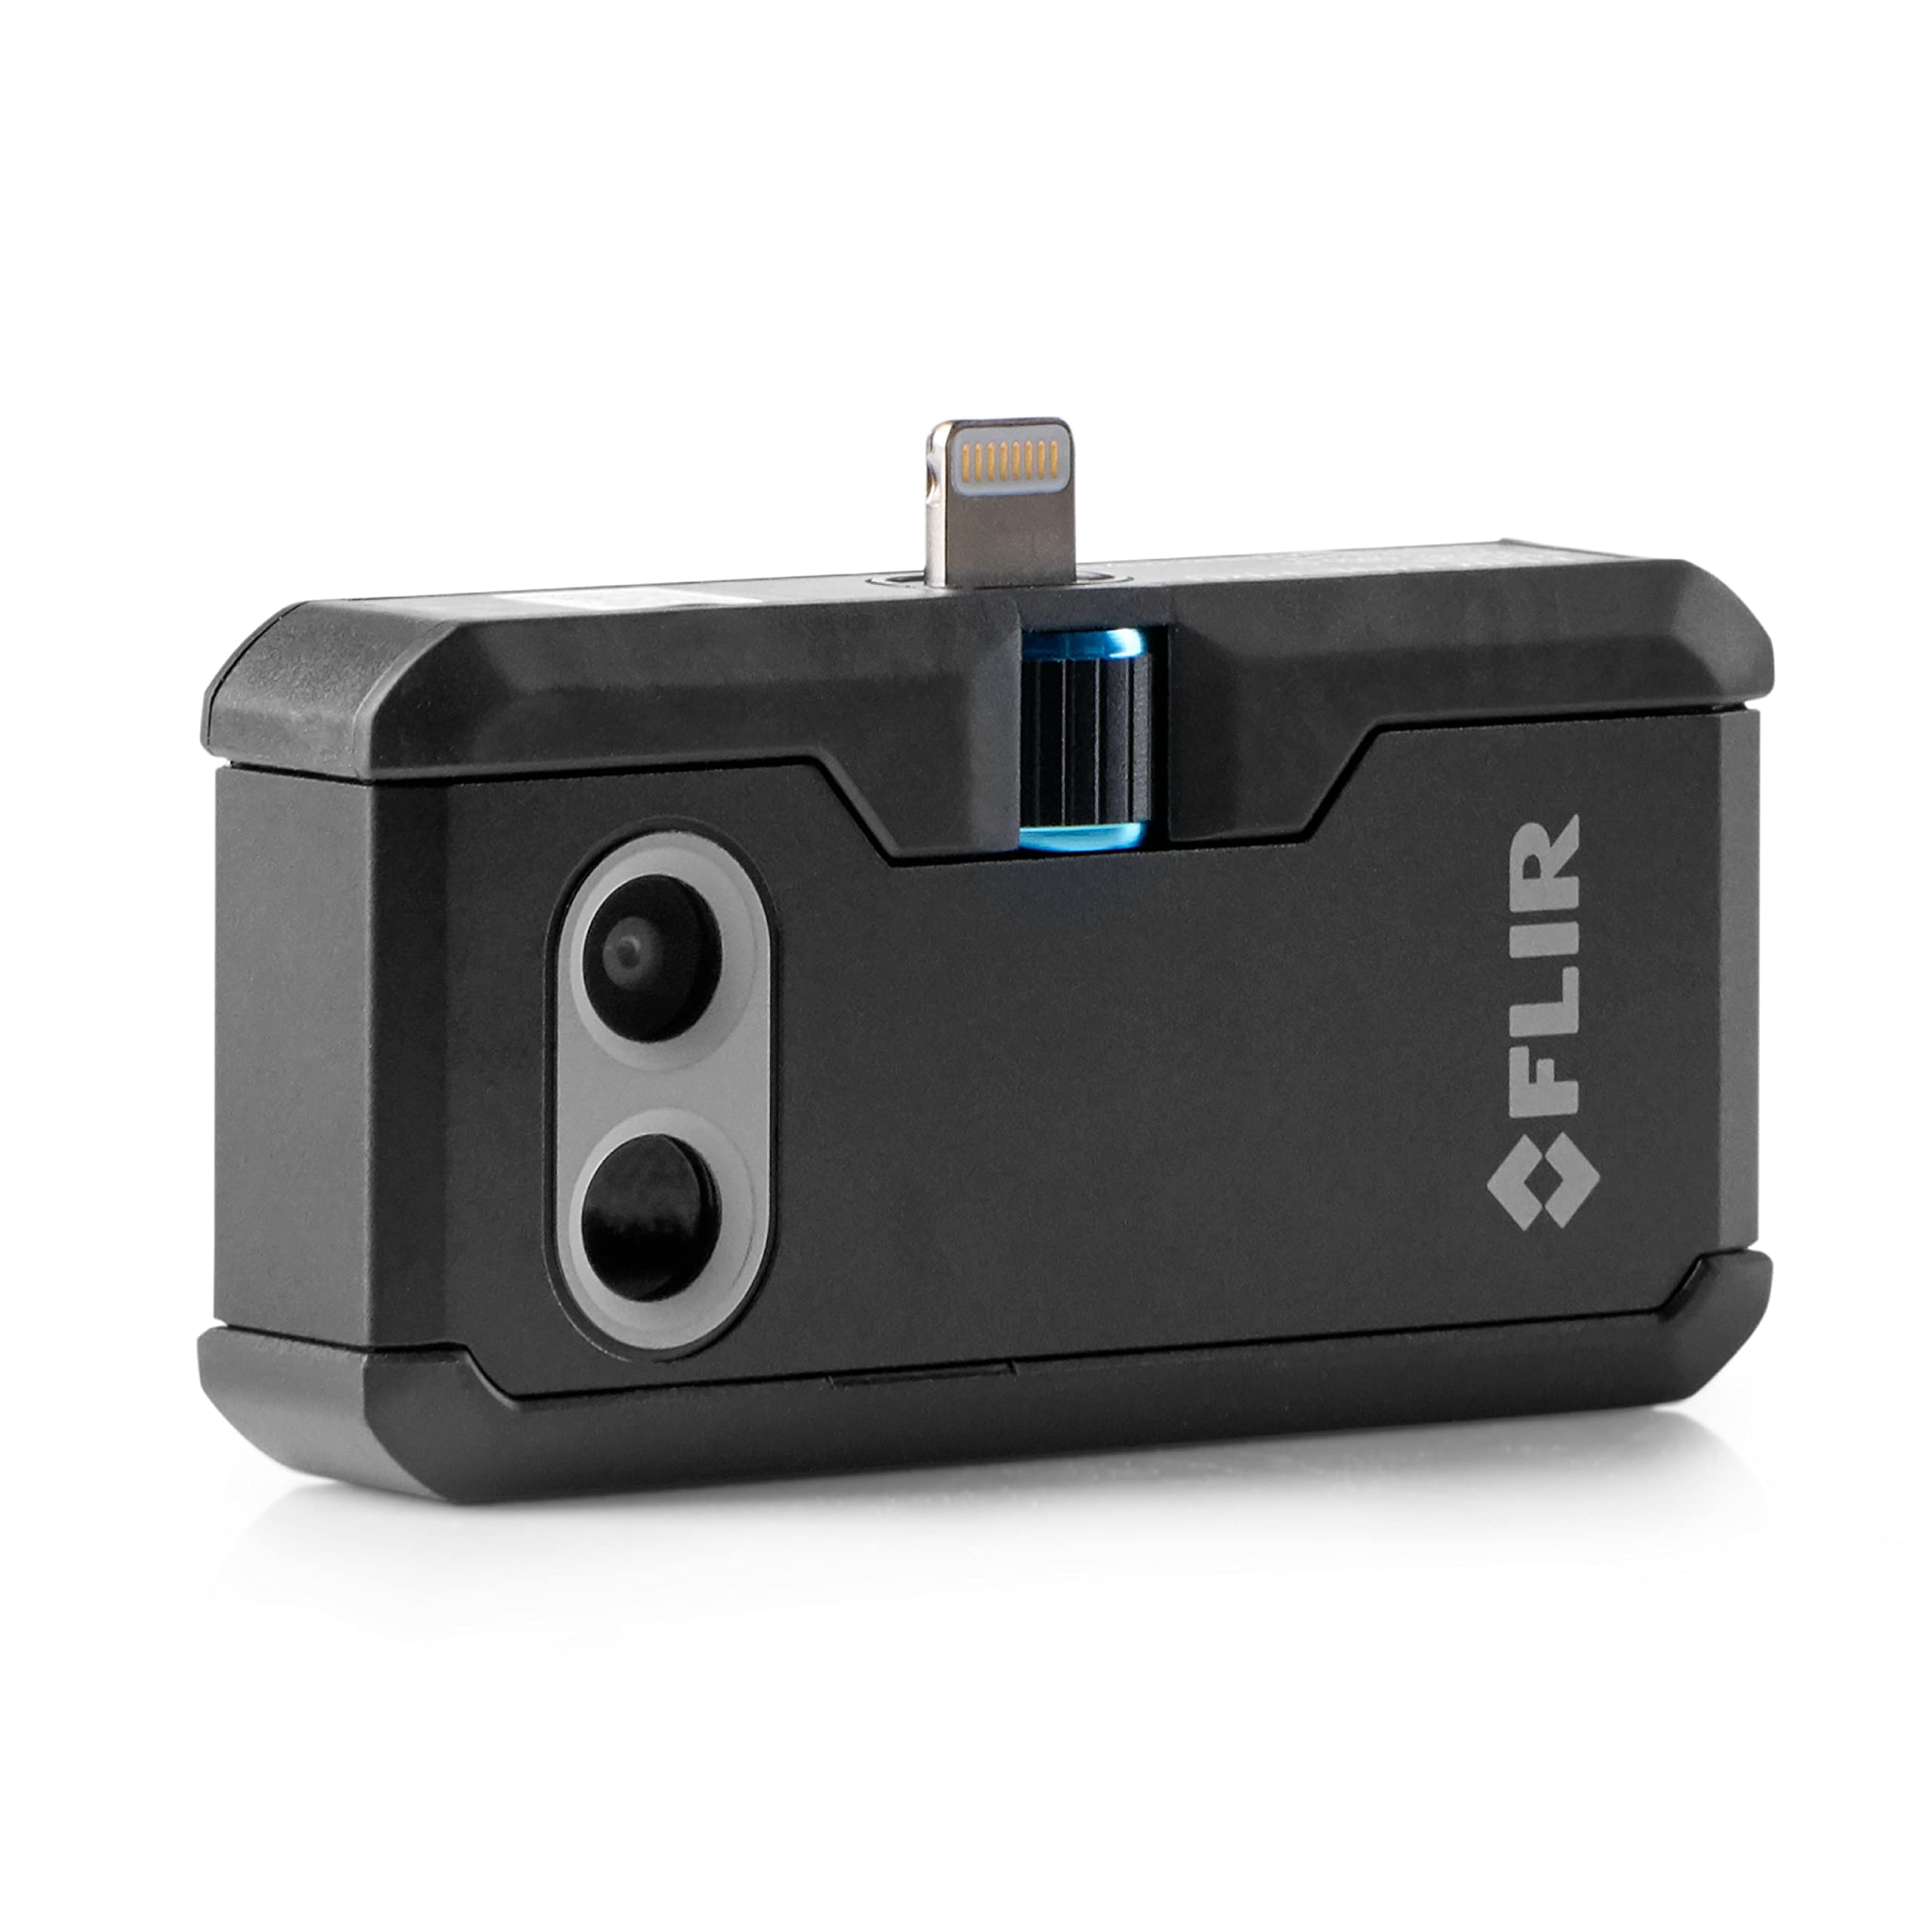 FLIR ONE Pro - iOS - Caméra thermique de qualité professionnelle pour smartphones - avec VividIR et MSX Image Enhancement Technology